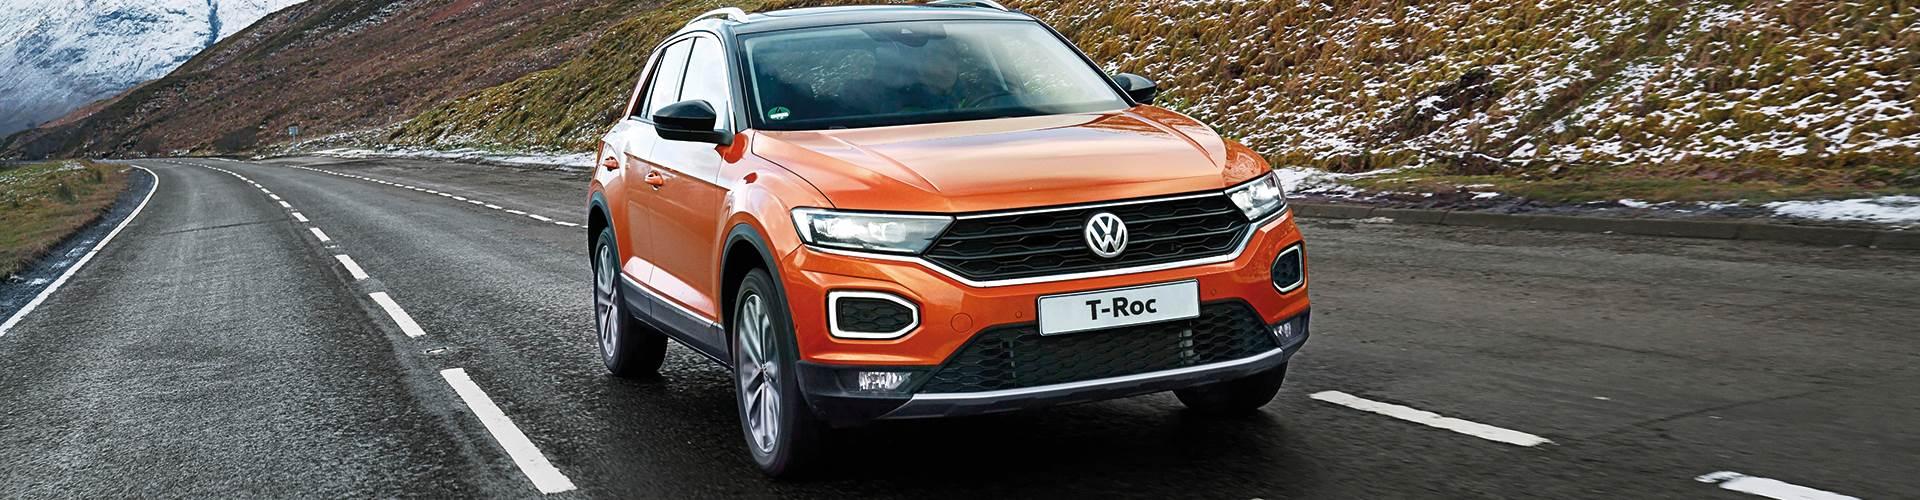 Renting Volkswagen T-Roc